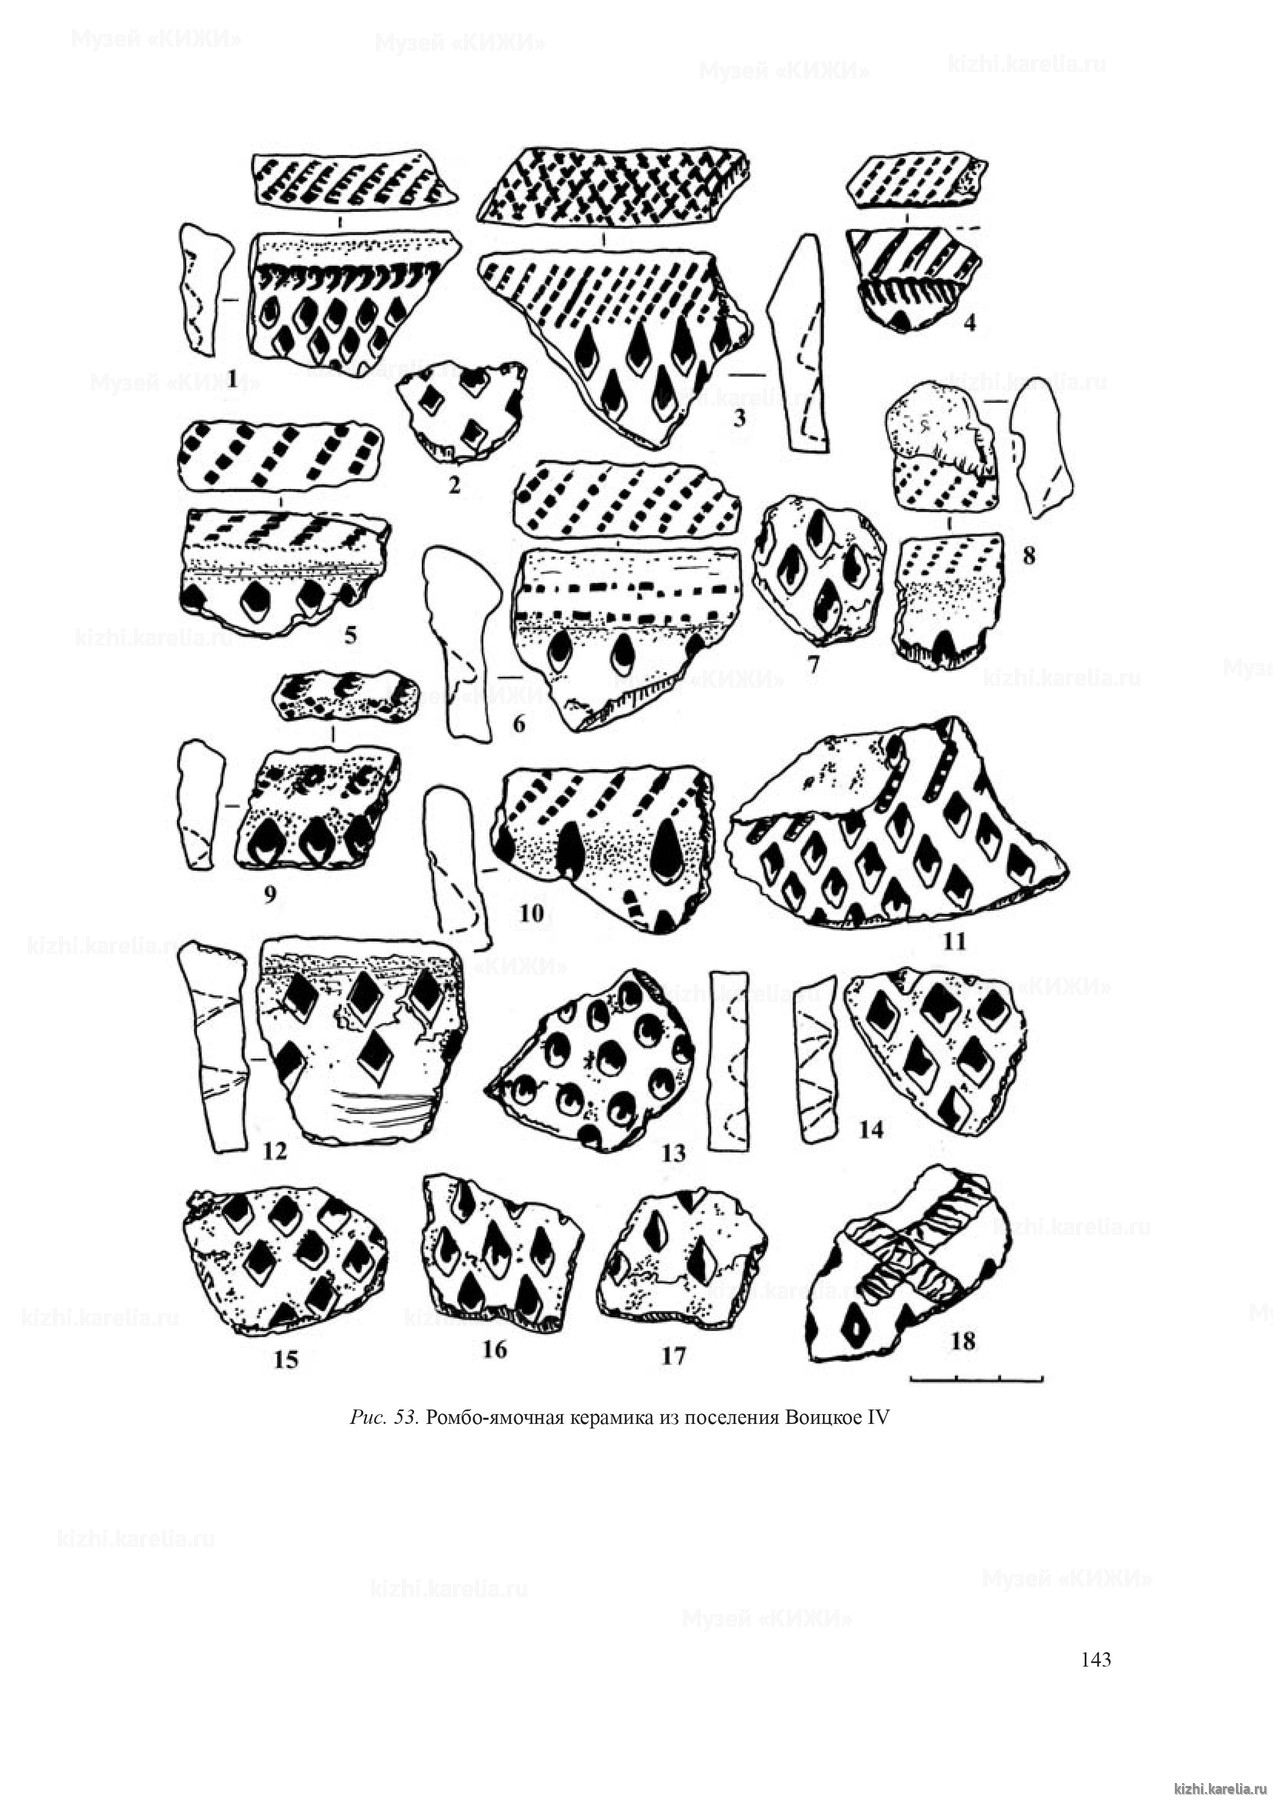 Рис. 53. Ромбо-ямочная керамика из поселения Воицкое IV